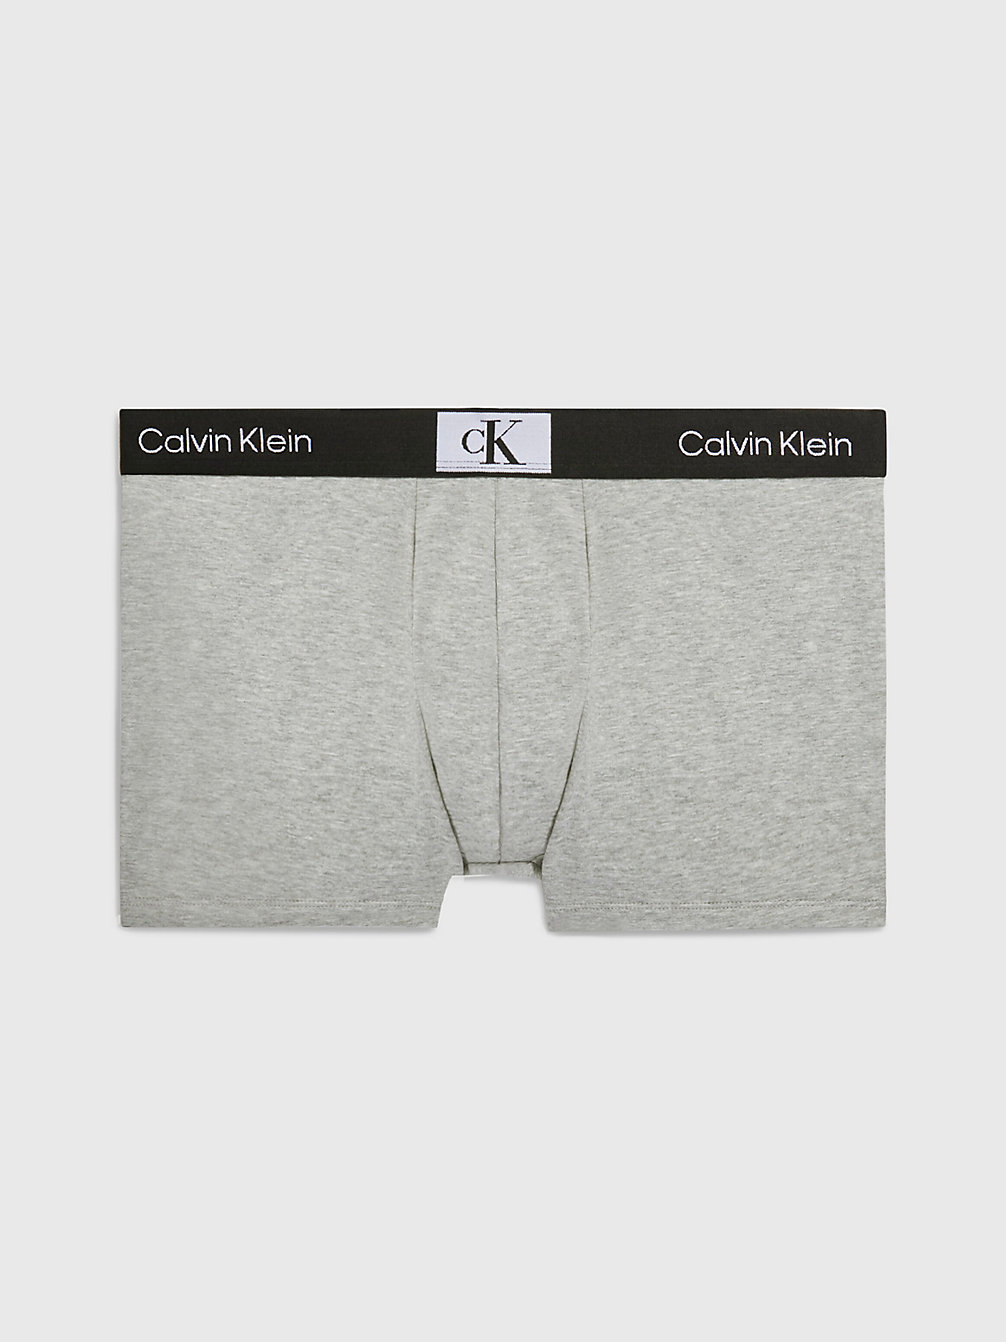 GREY HEATHER Trunks - Ck96 undefined men Calvin Klein